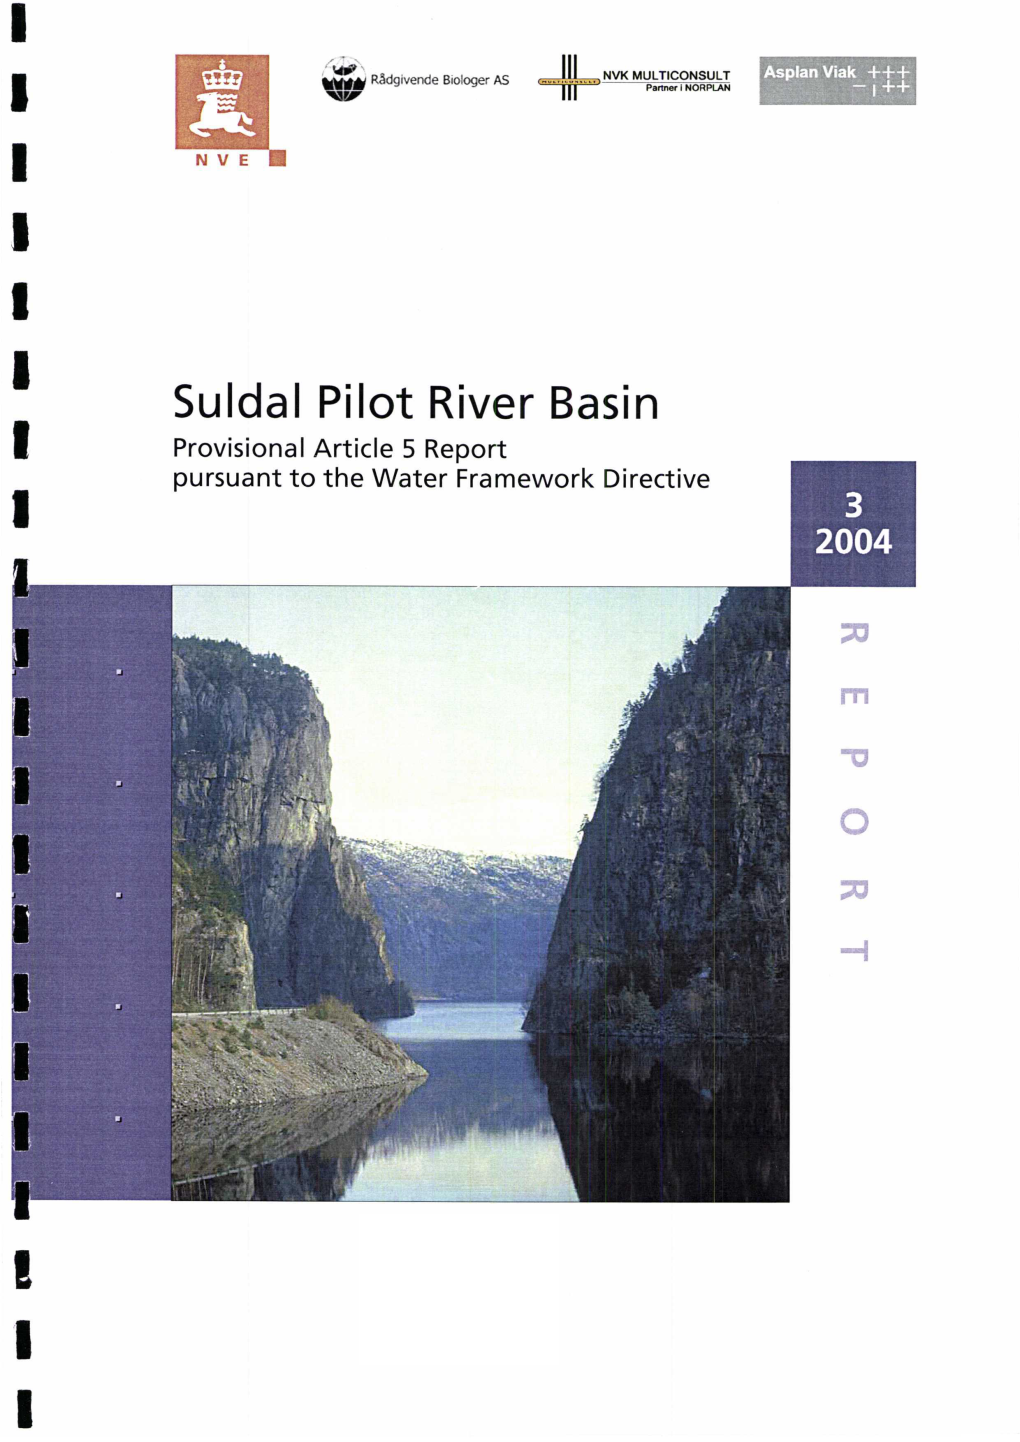 Suldal Pilot River Basin, Norway